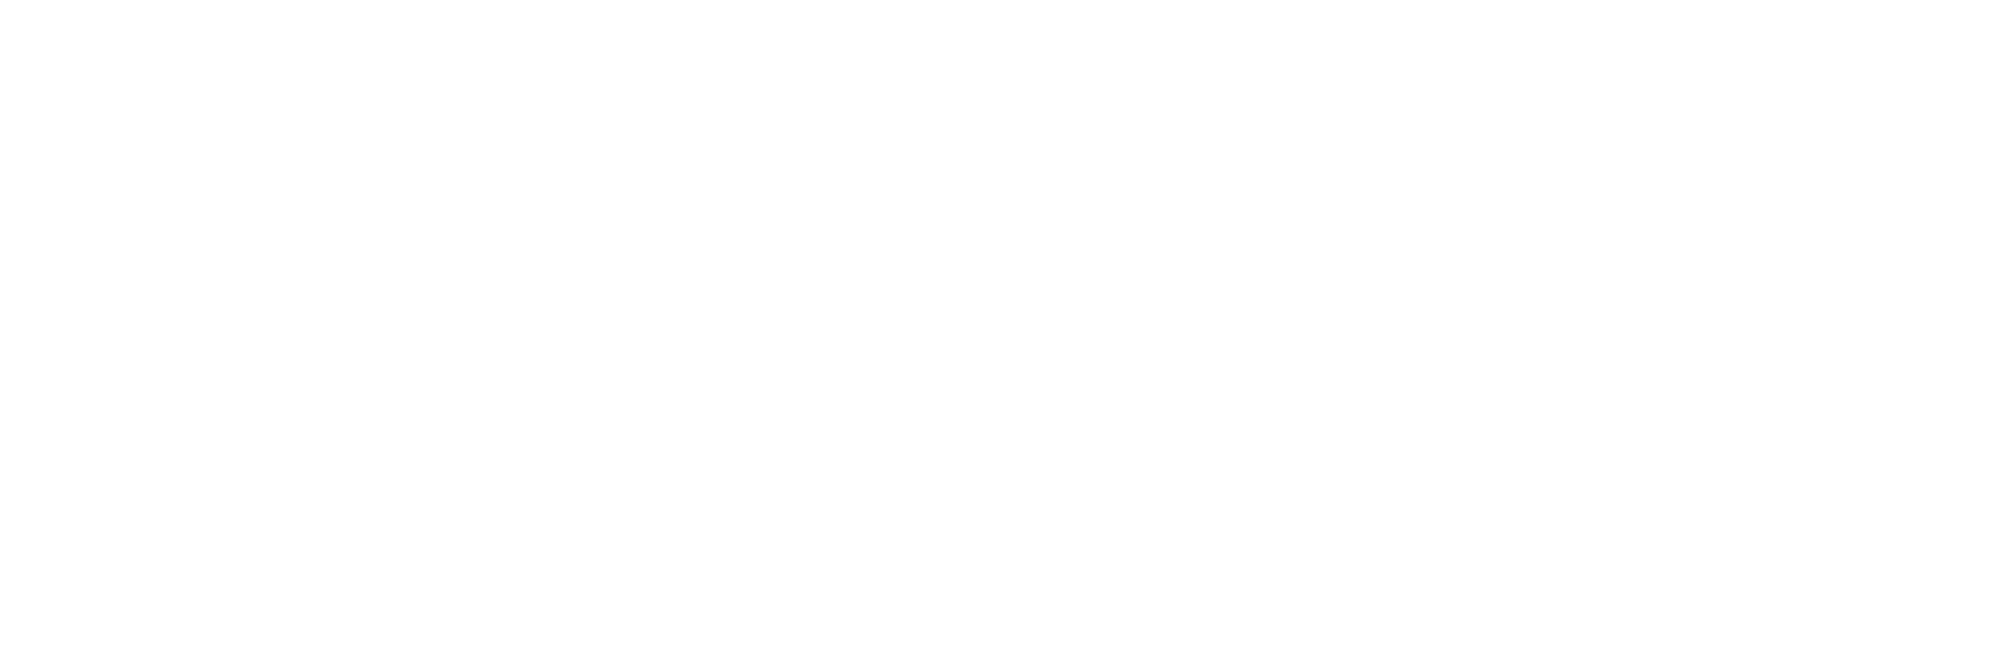 520钓鱼网_钓鱼人技巧生活综合网站_关注钓鱼人生活-520diaoyu.com